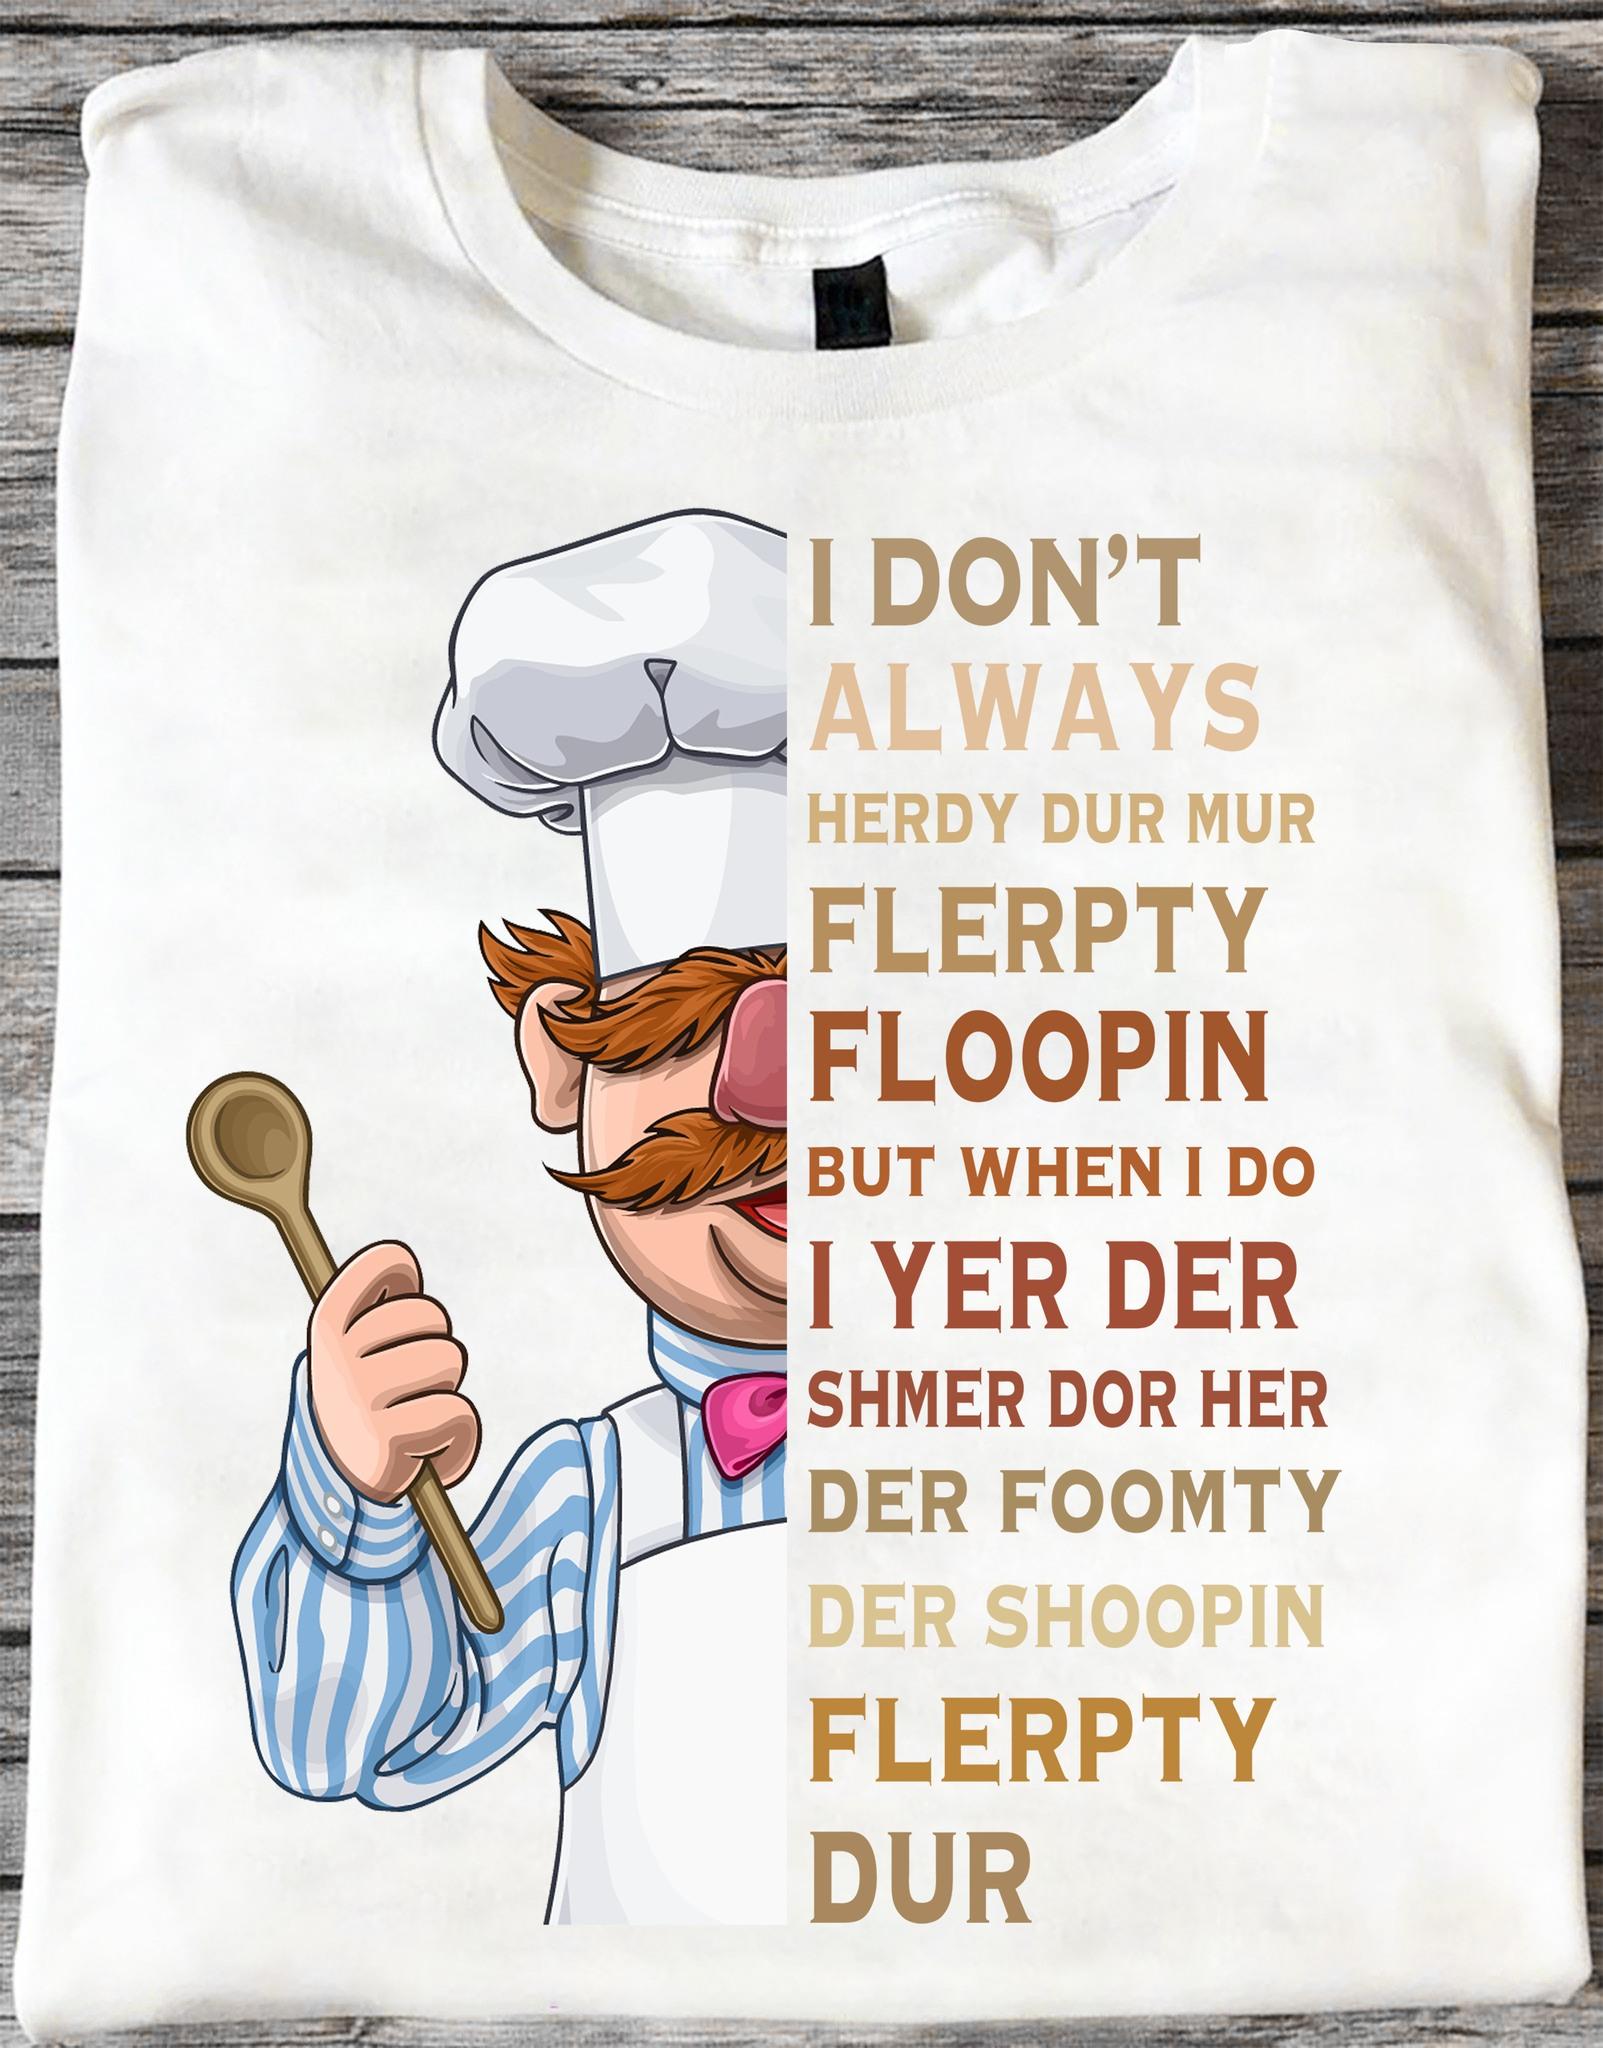 Swedish Chef - I Don't Always Herdy Dur Mur Flerpty Floopin But When I Do I Yer Der Shmer Dor Her Der Foomty, Der Shoopin Flerpty Dur